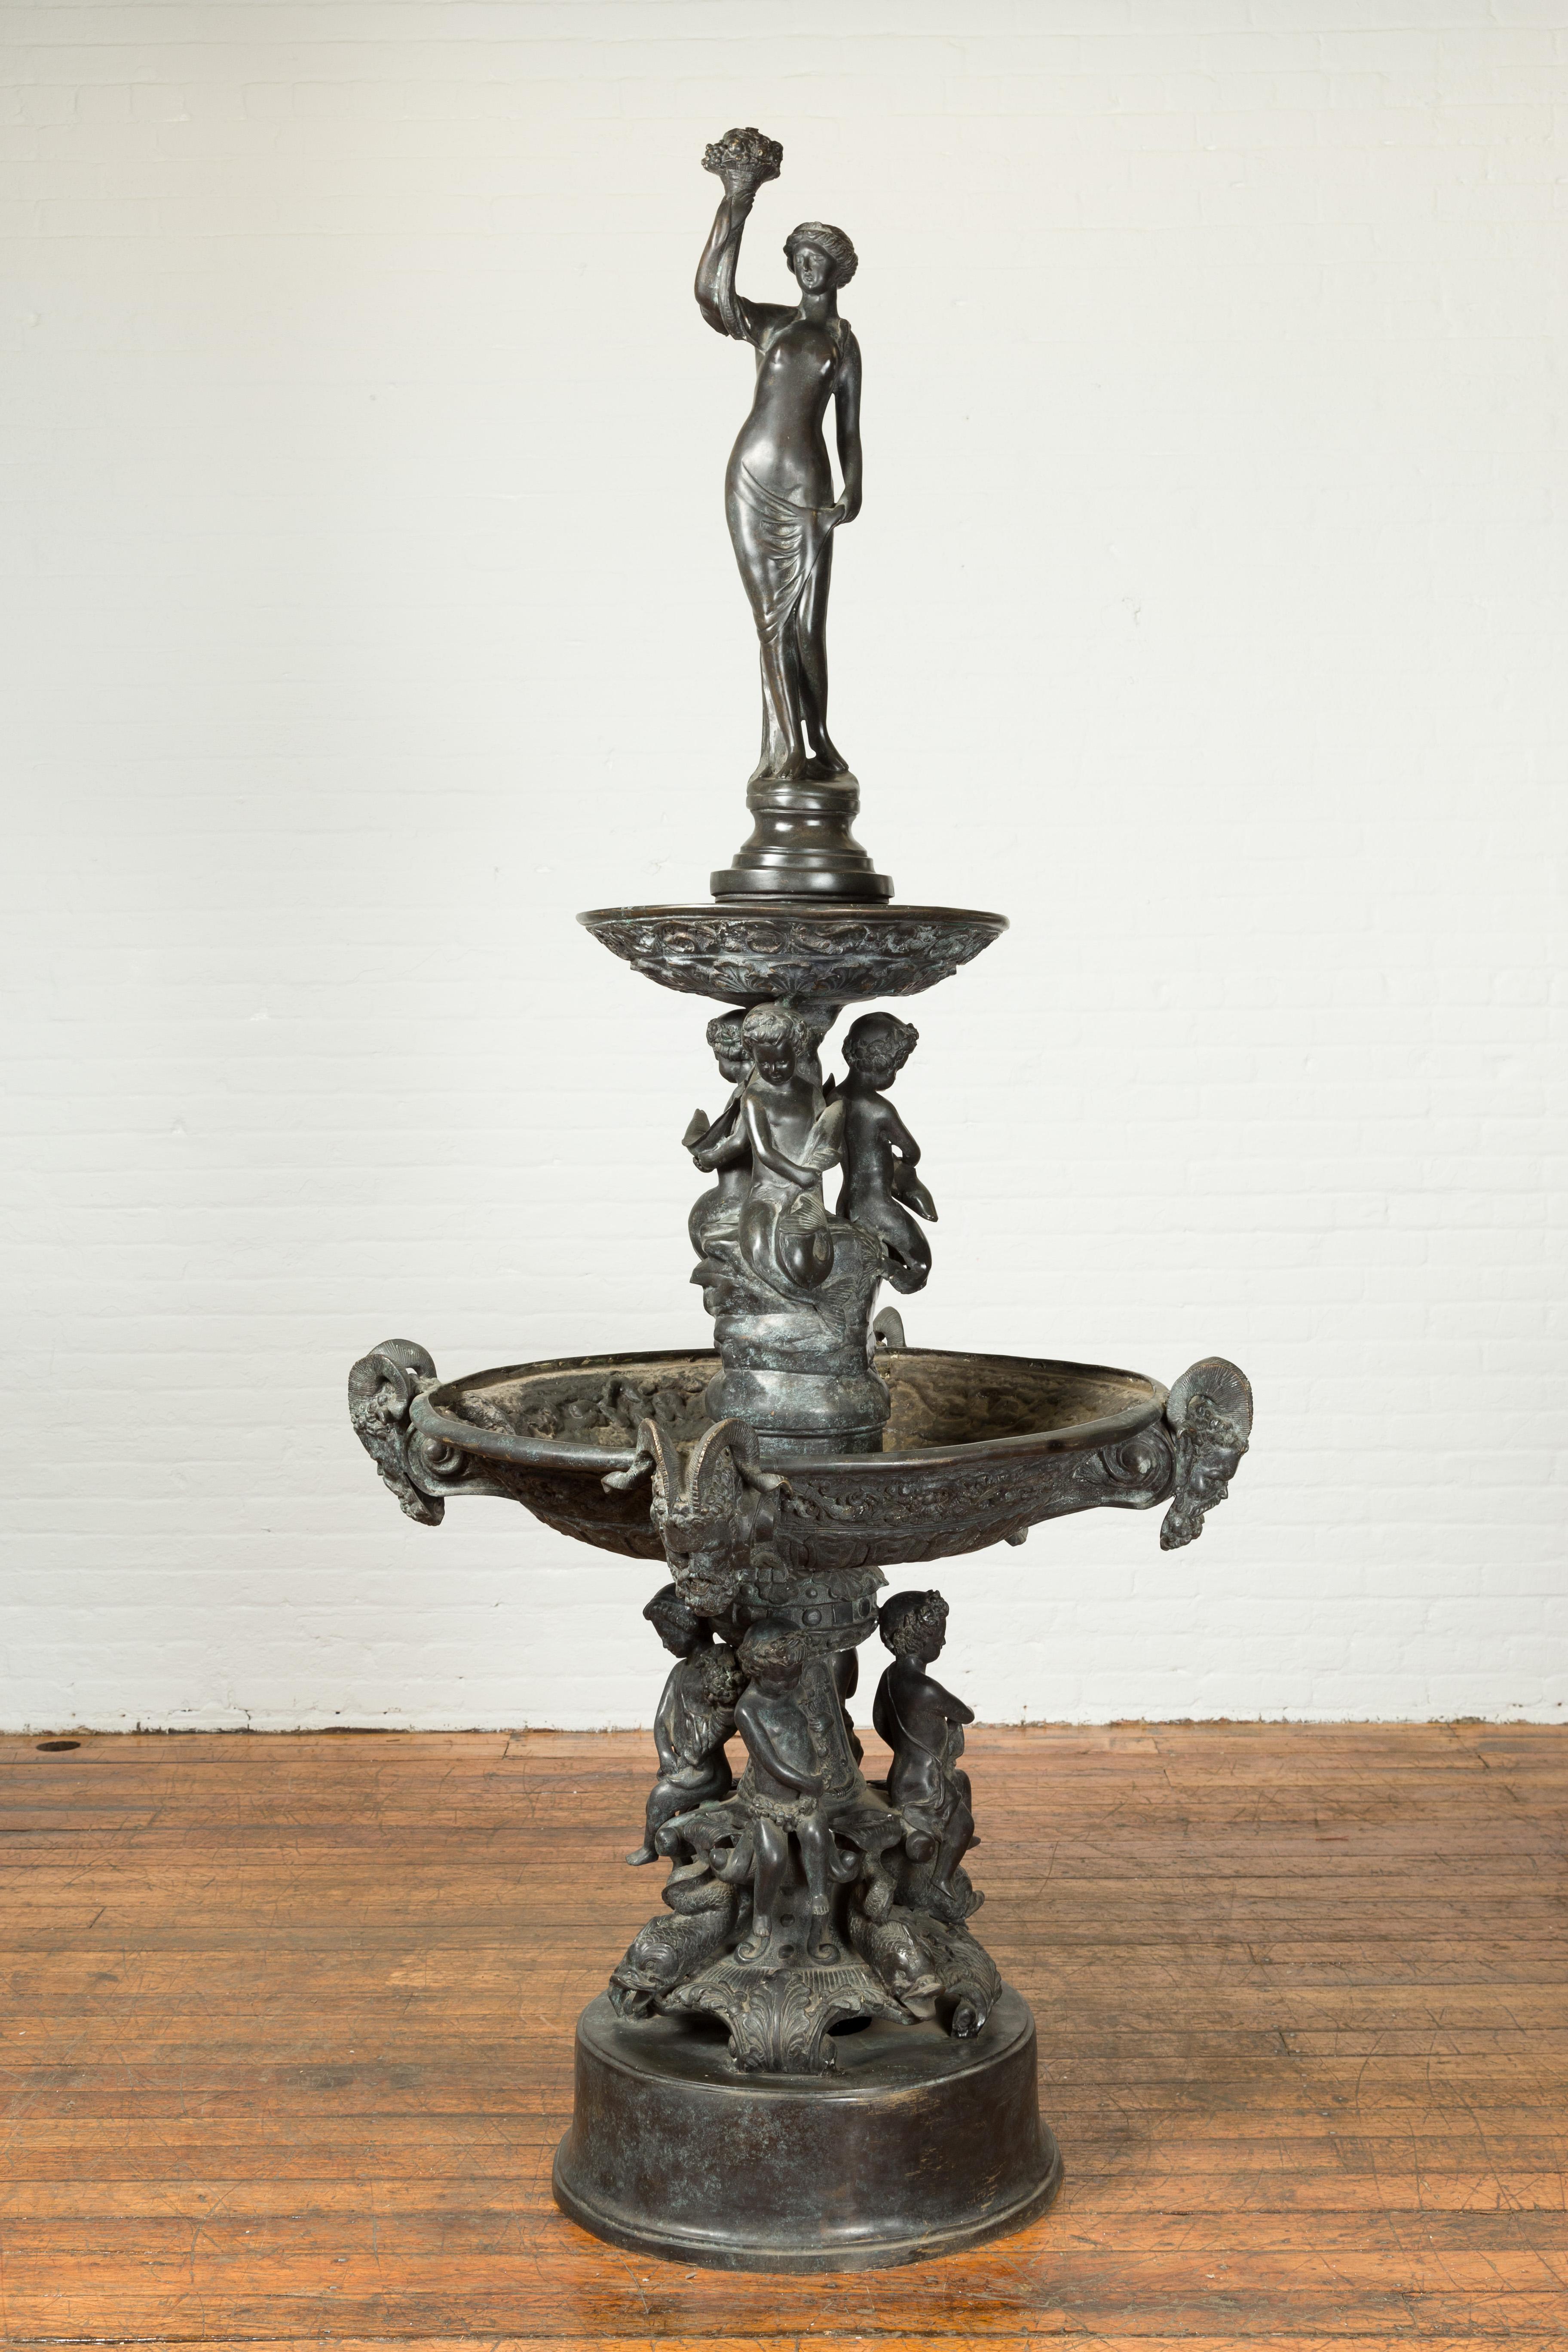 Grande fontaine de style gréco-romain en bronze coulé à la cire perdue, datant du milieu du XXe siècle, représentant une nymphe avec une corne d'abondance, des Tritons et des chérubins. Créée avec la technique traditionnelle de la cire perdue qui